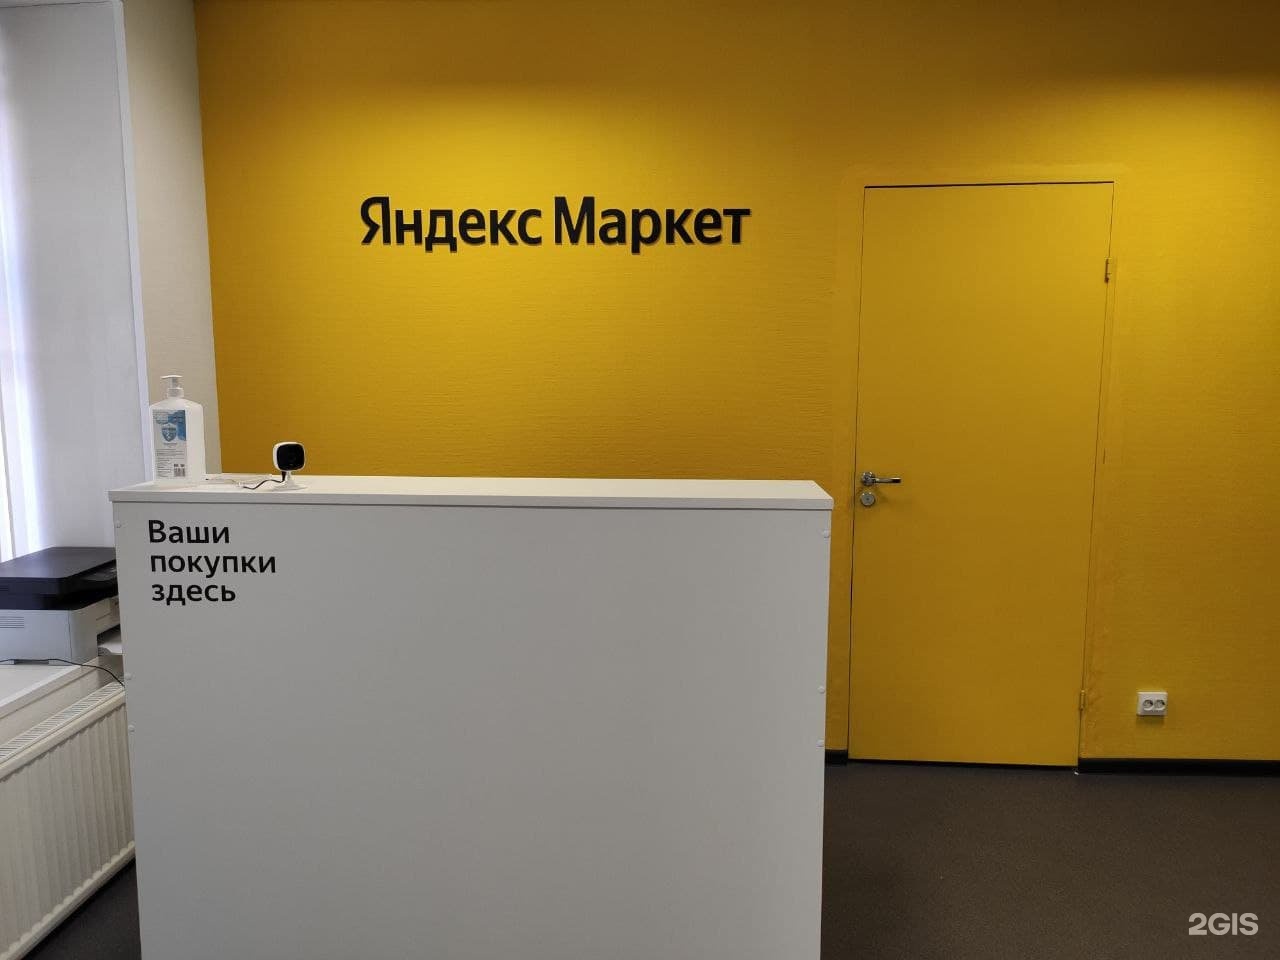 Пункт выдачи Яндекс Маркет СПБ